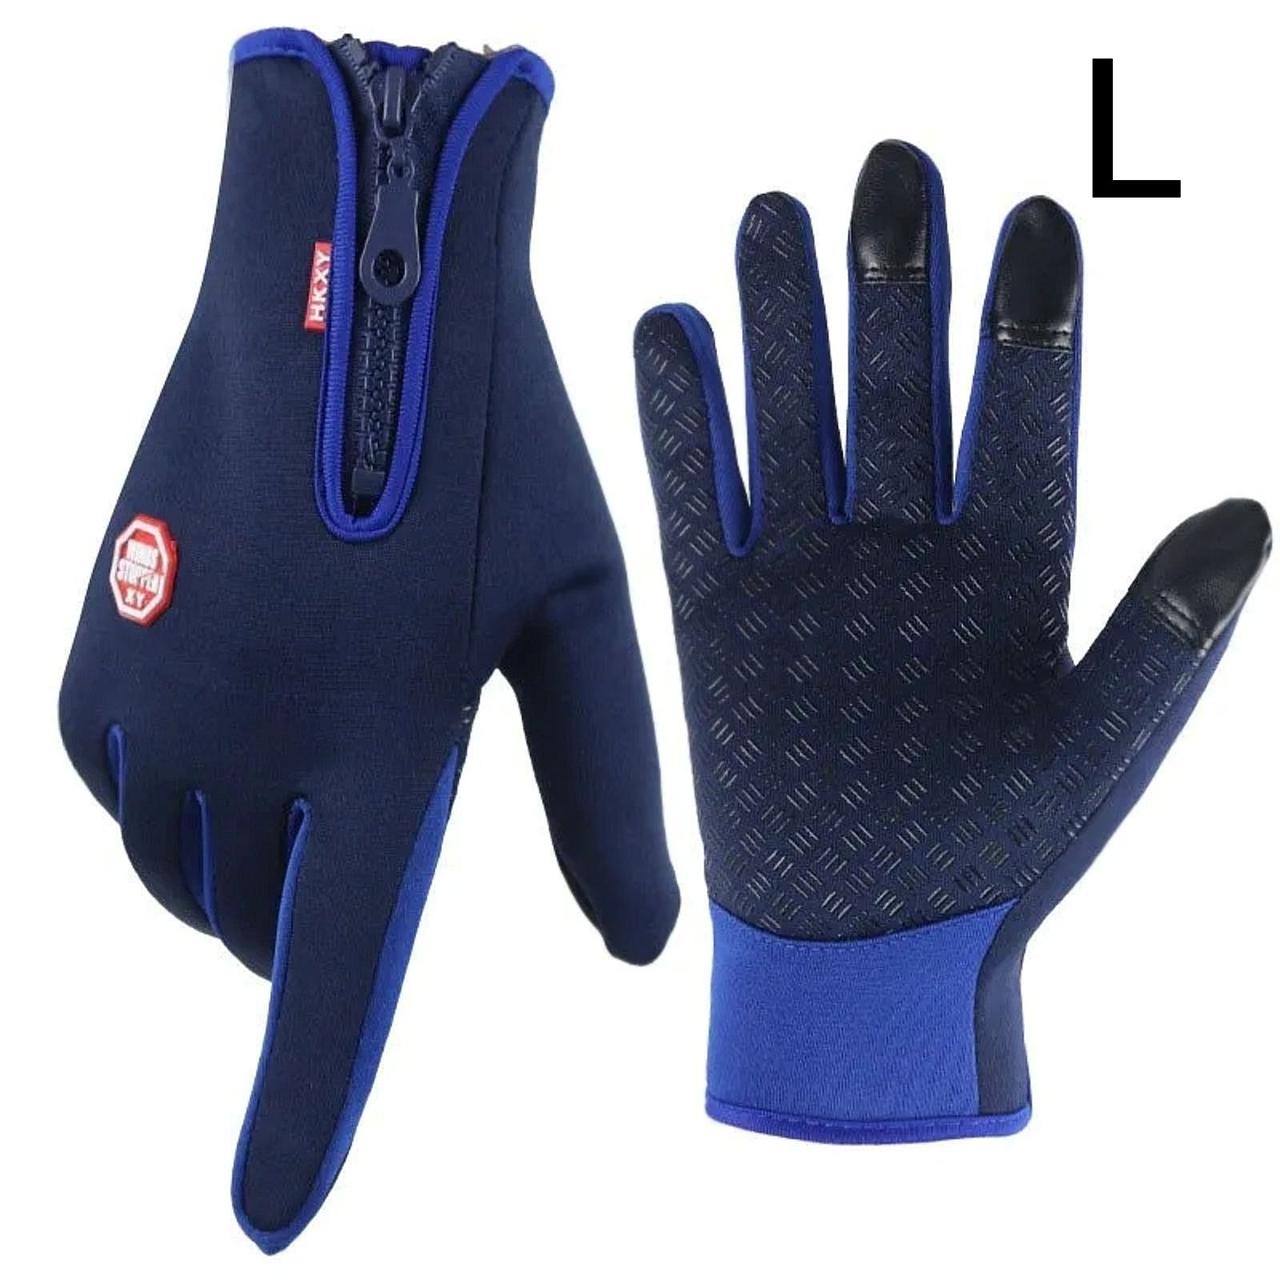 L. Чорні універсальні, спортивні, зимові рукавички з сенсором для телефону. Чорні жіночі жіночі чоловічі рукавички.